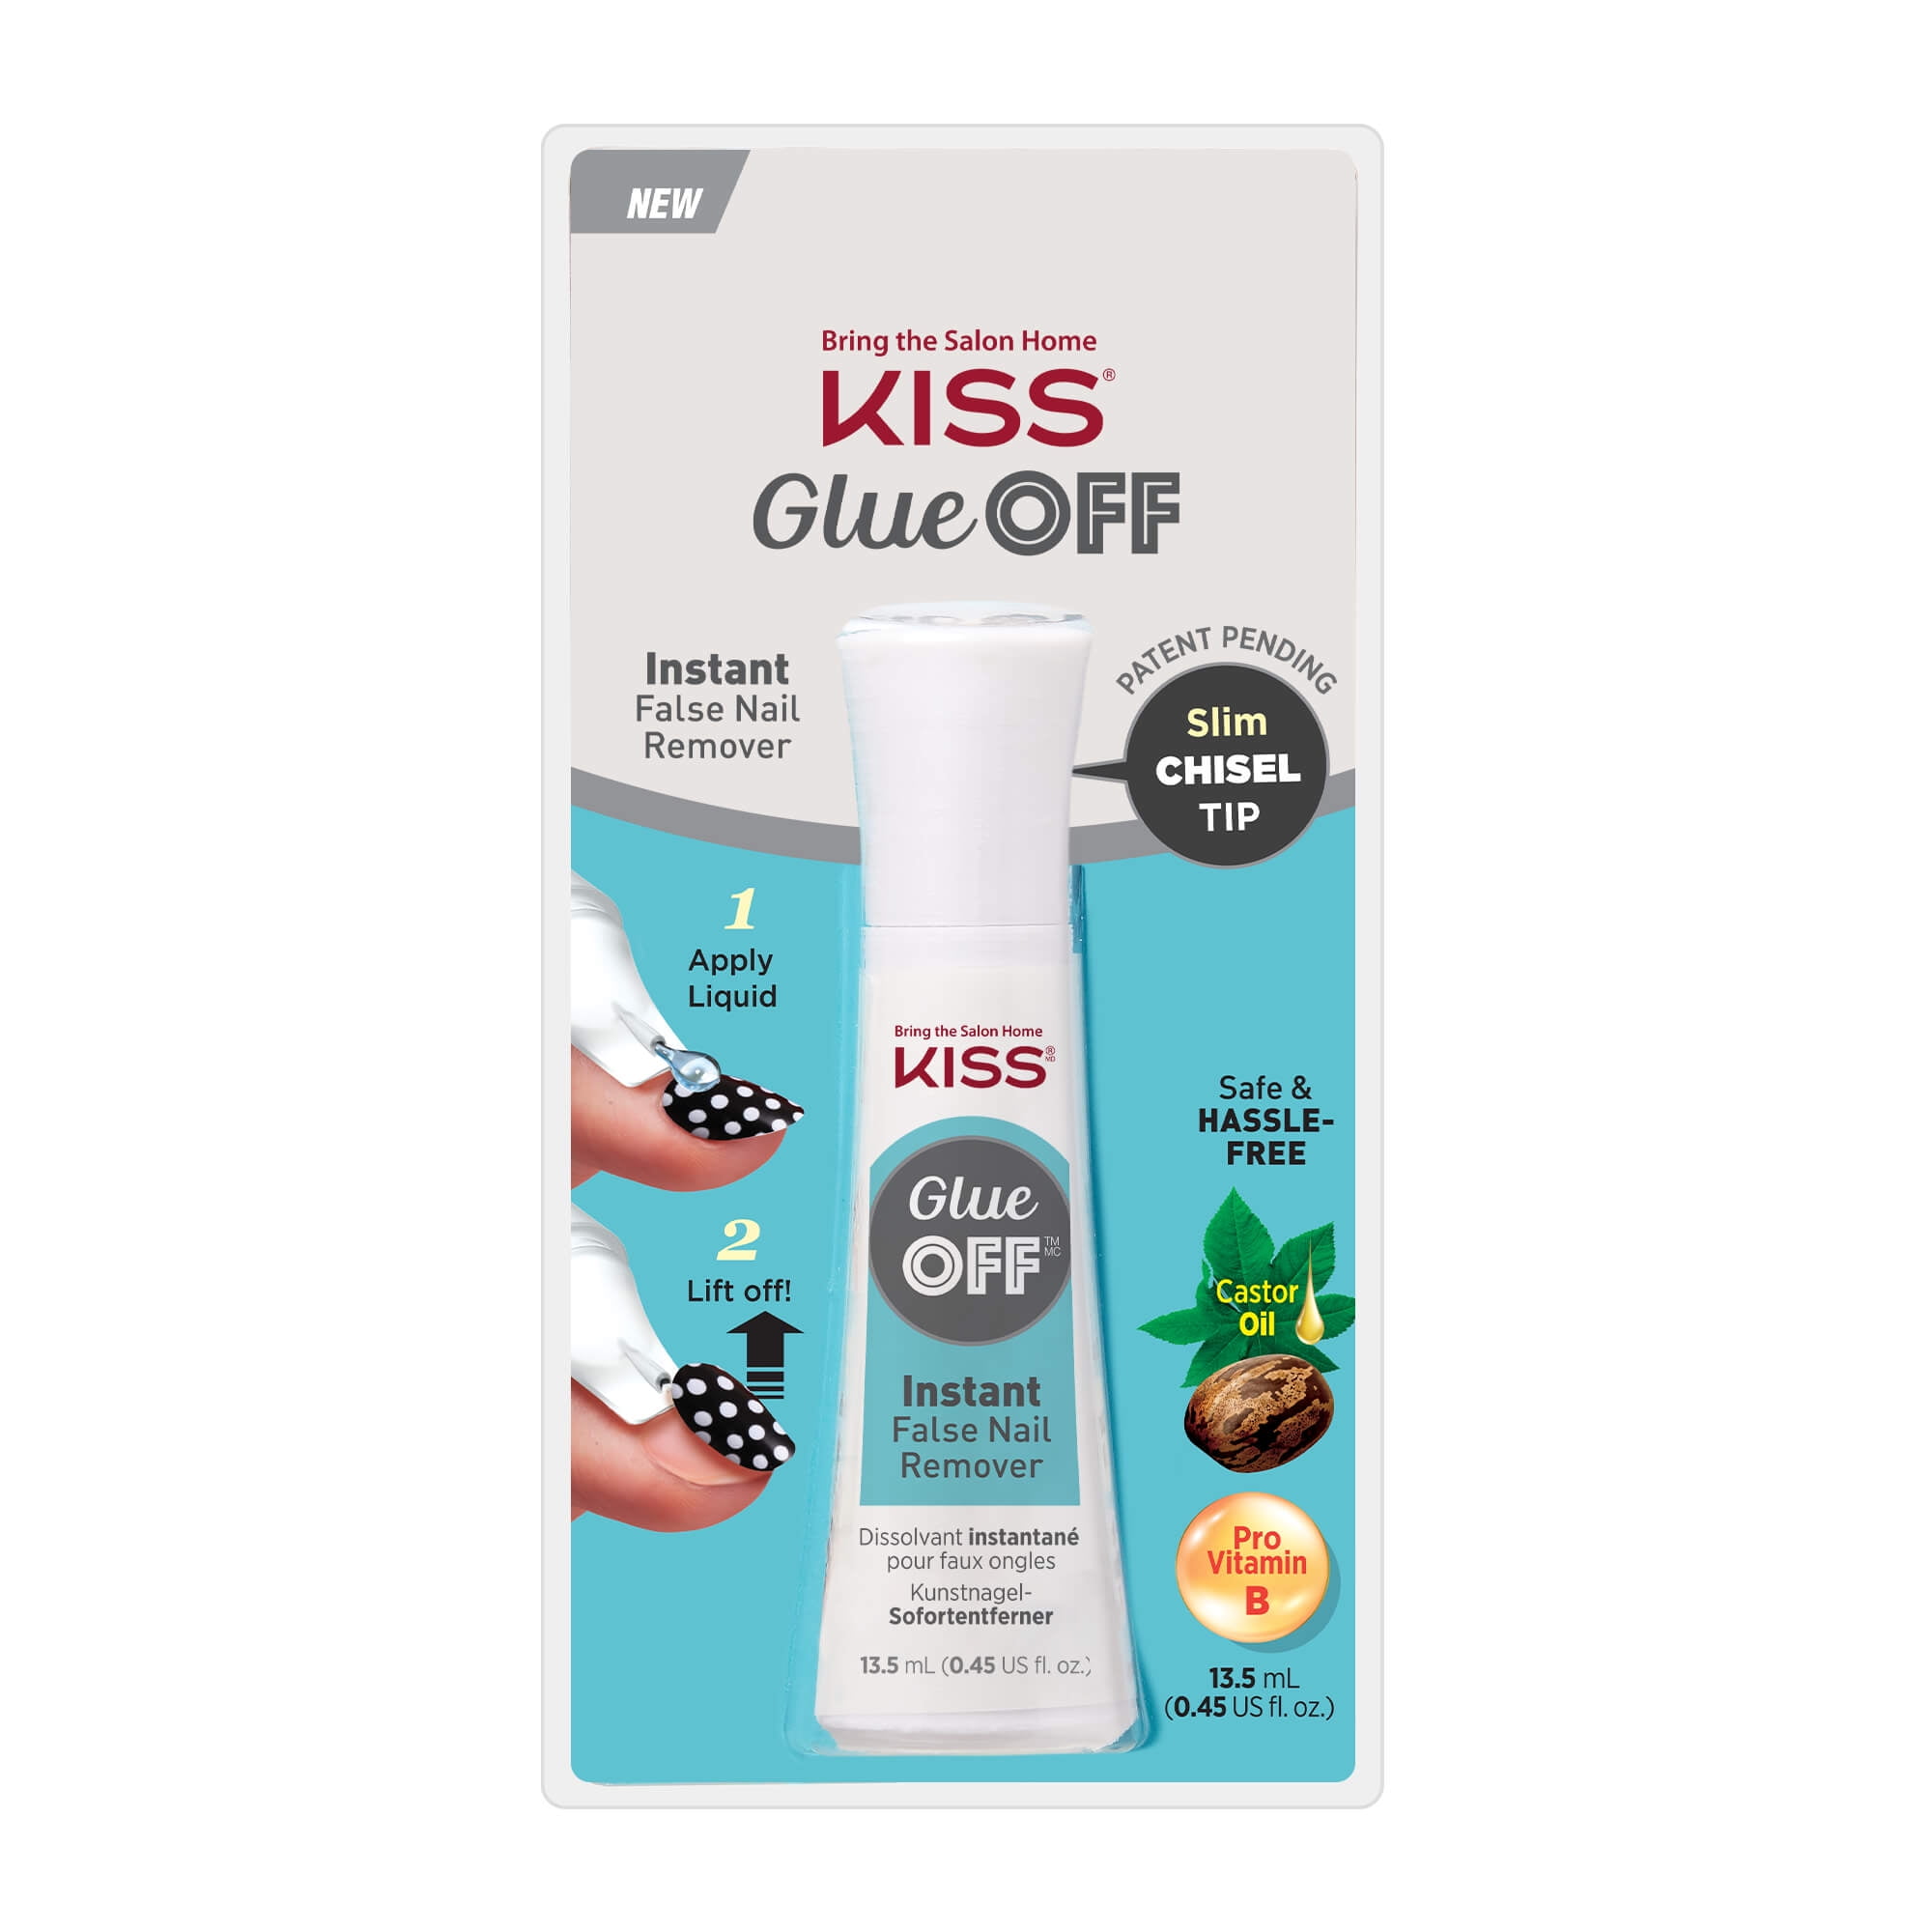 KISS Glue Off False Nail Remover - Walmart.com - Walmart.com